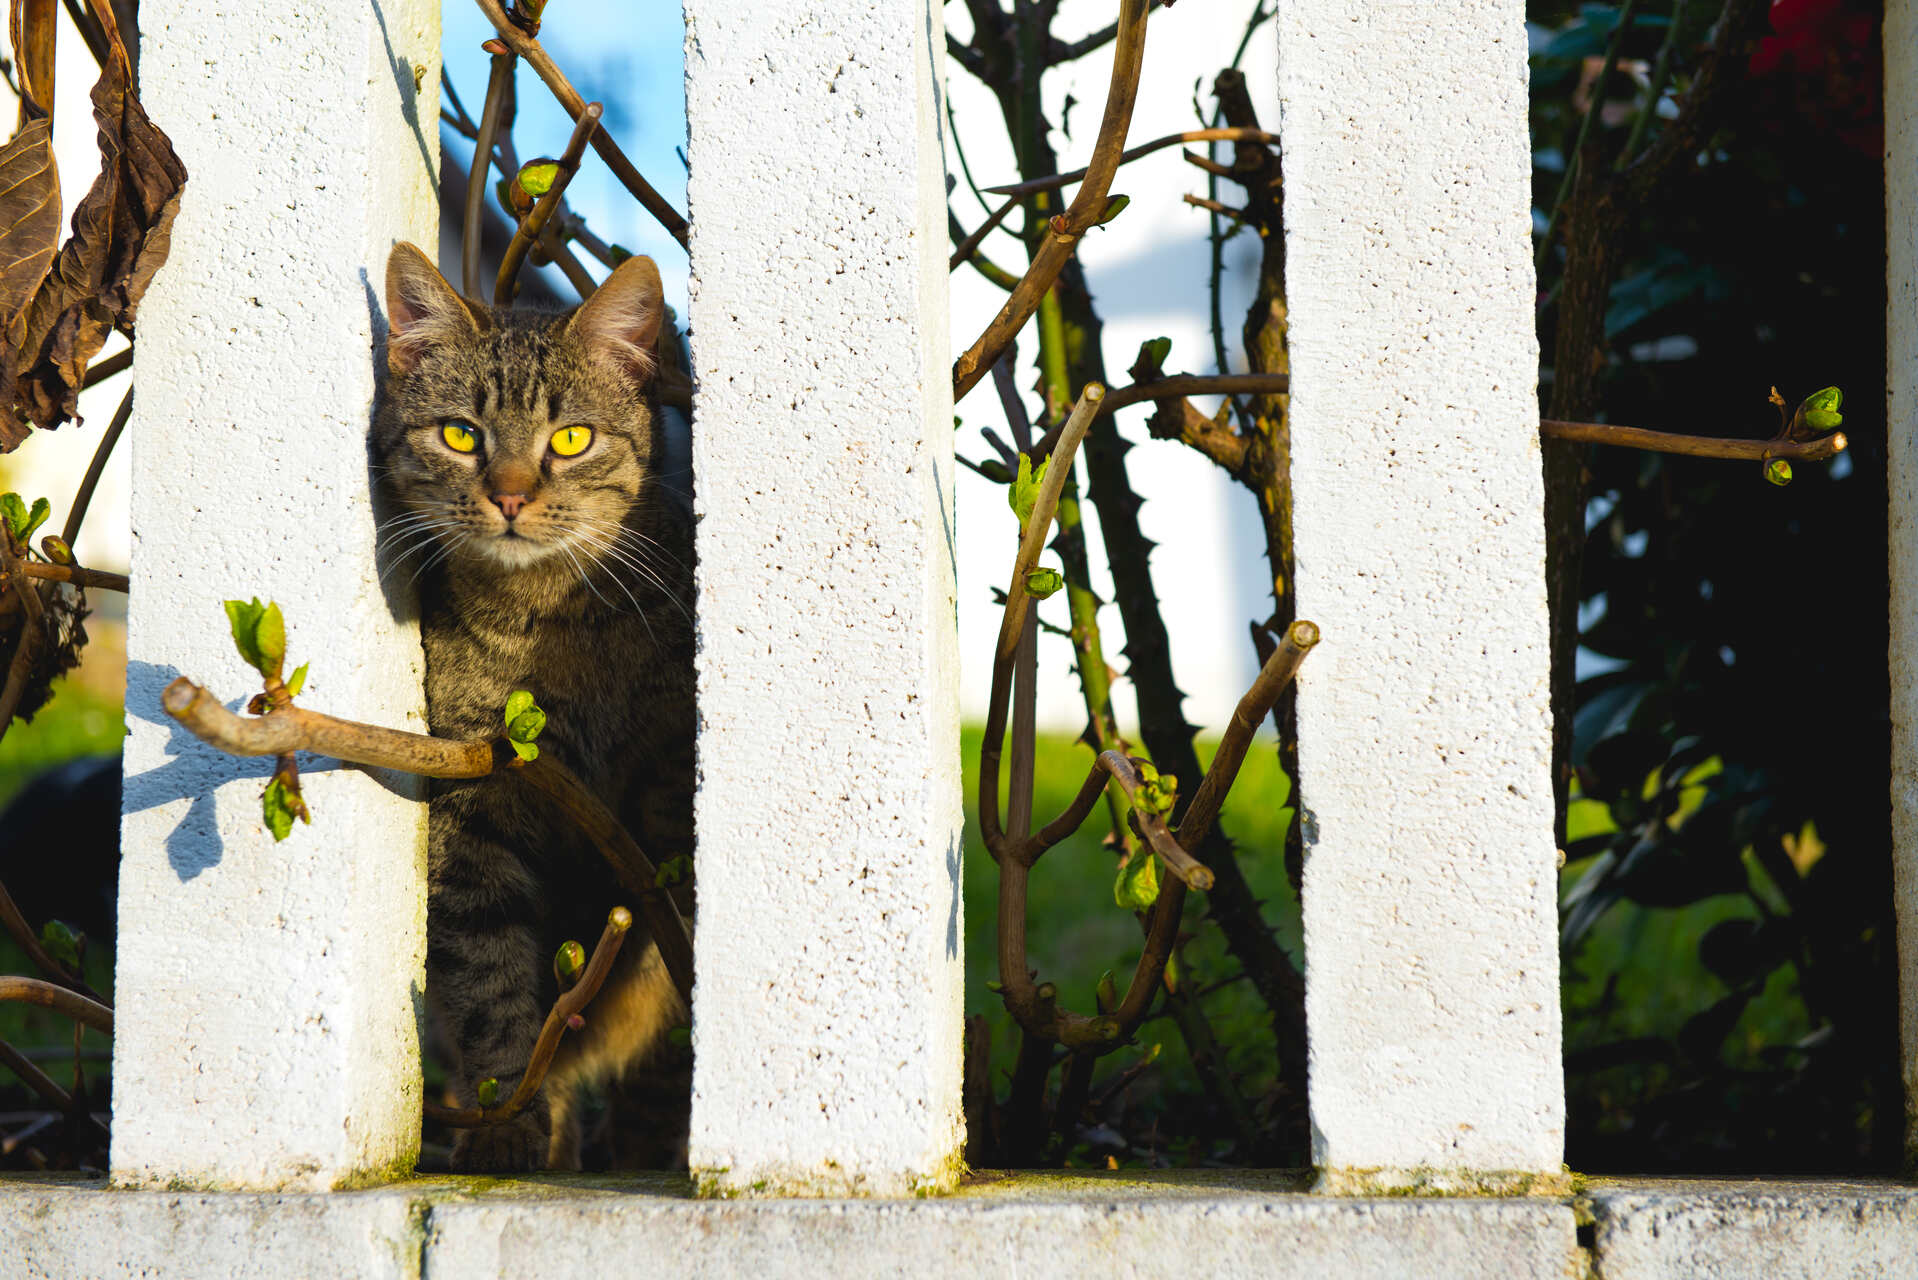 A cat peeking through a white garden fence